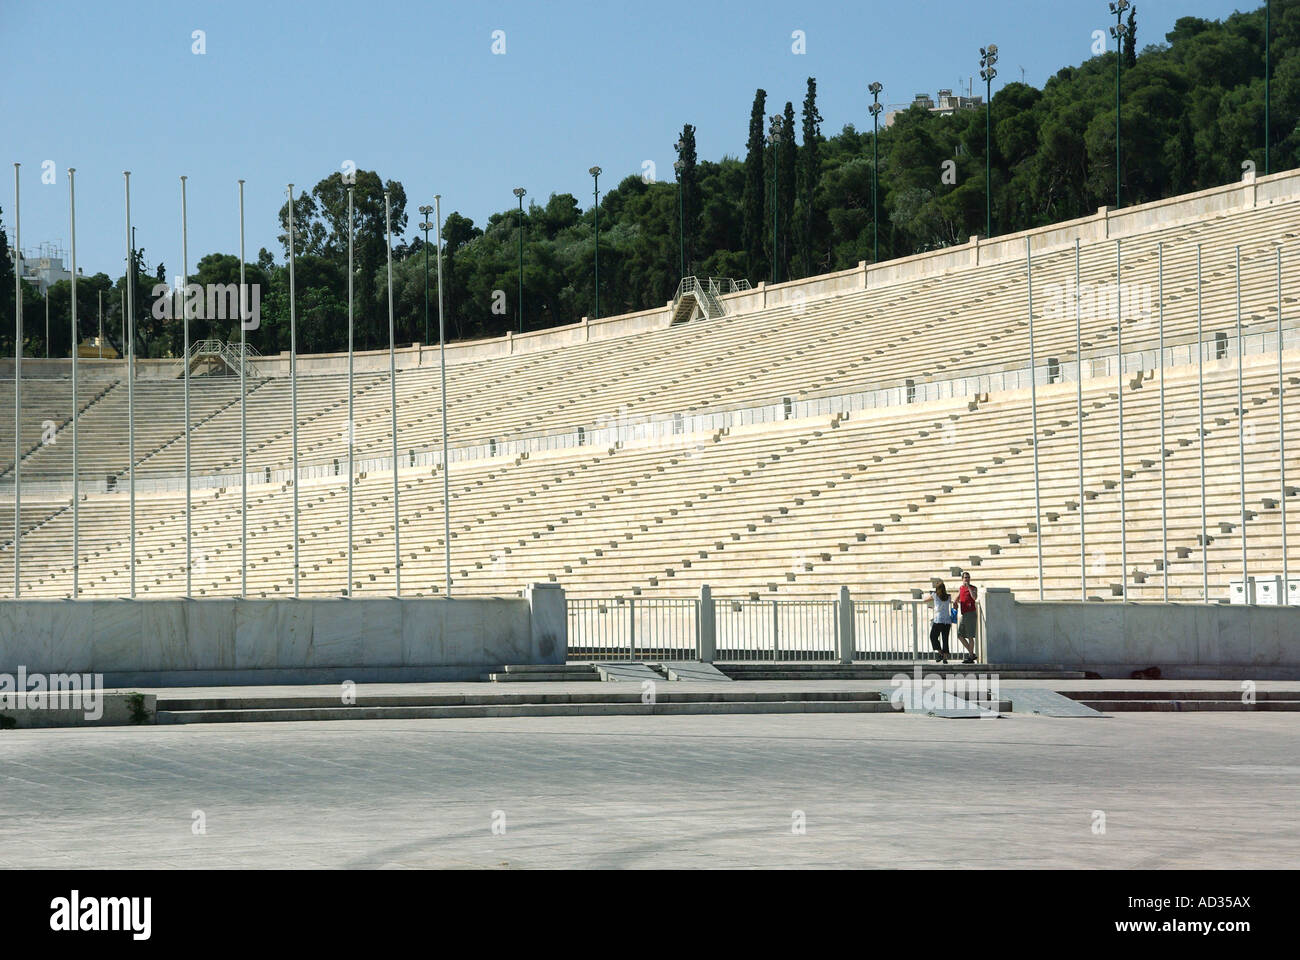 Athen paar Leute Panathinaiko weißen Marmorboden Arena & Track-Stadion für die griechischen Olympischen Spiele von 1896 nun eine wichtige touristische Attraktion Griechenland EU Stockfoto